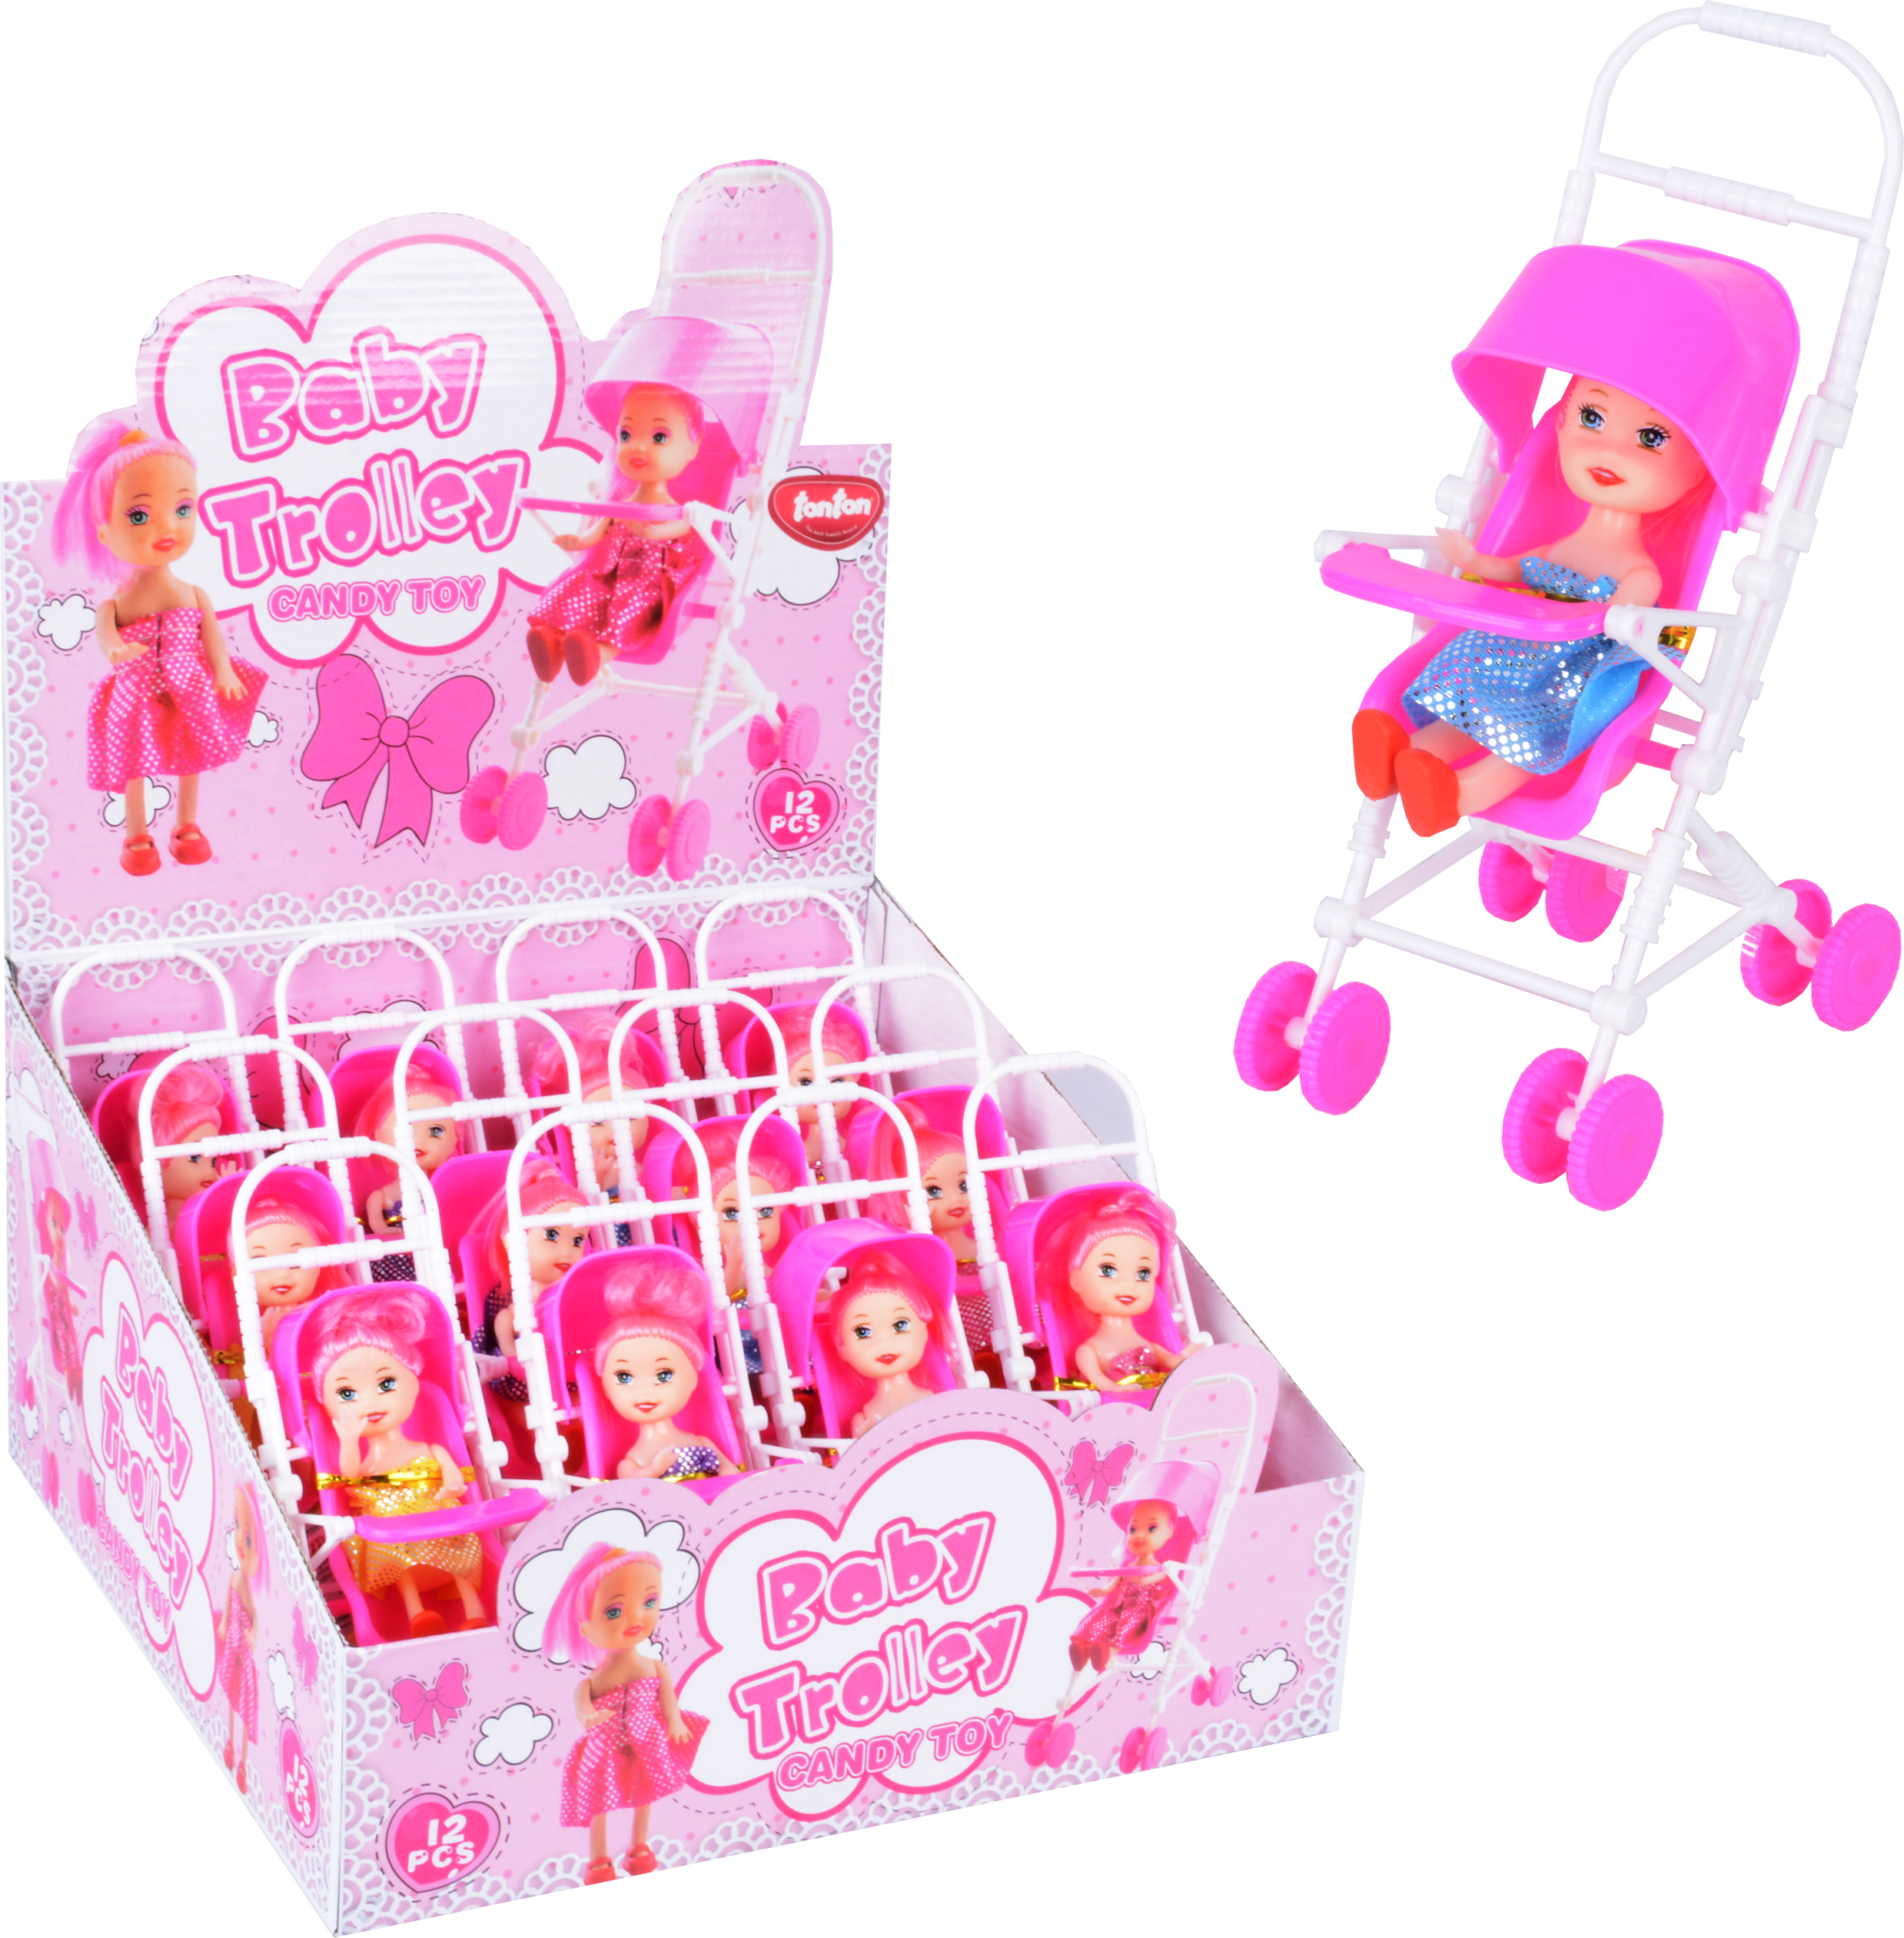 Baby Trolley mit Candy 12 Stück